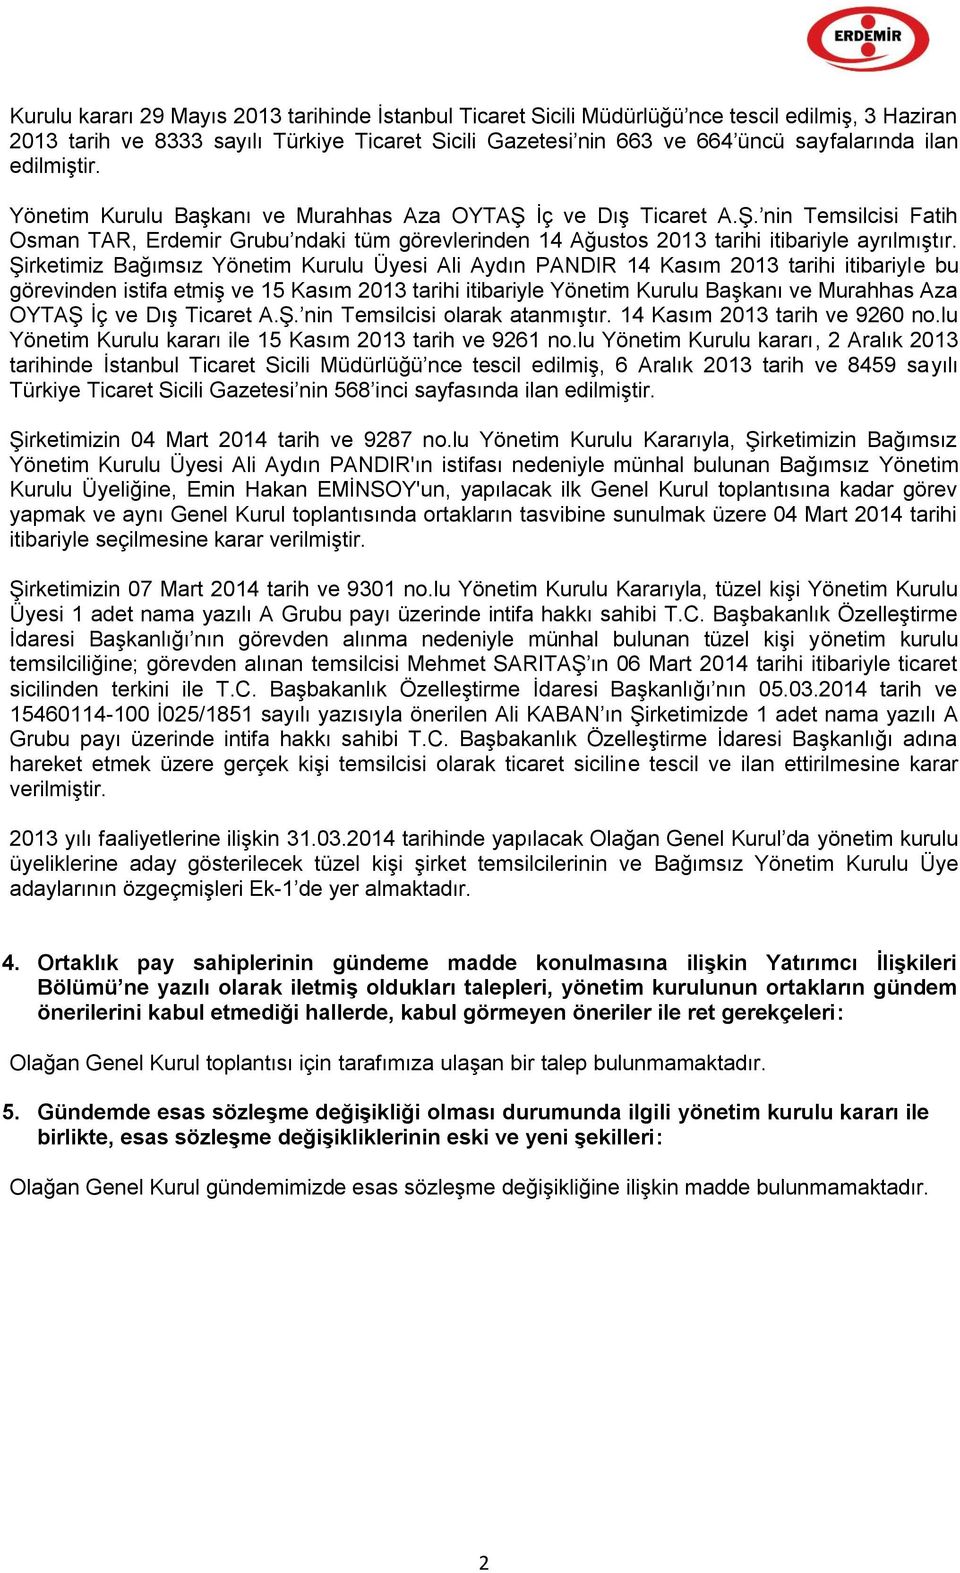 Şirketimiz Bağımsız Ali Aydın PANDIR 14 Kasım 2013 tarihi itibariyle bu görevinden istifa etmiş ve 15 Kasım 2013 tarihi itibariyle Yönetim Kurulu Başkanı ve Murahhas Aza OYTAŞ İç ve Dış Ticaret A.Ş. nin Temsilcisi olarak atanmıştır.